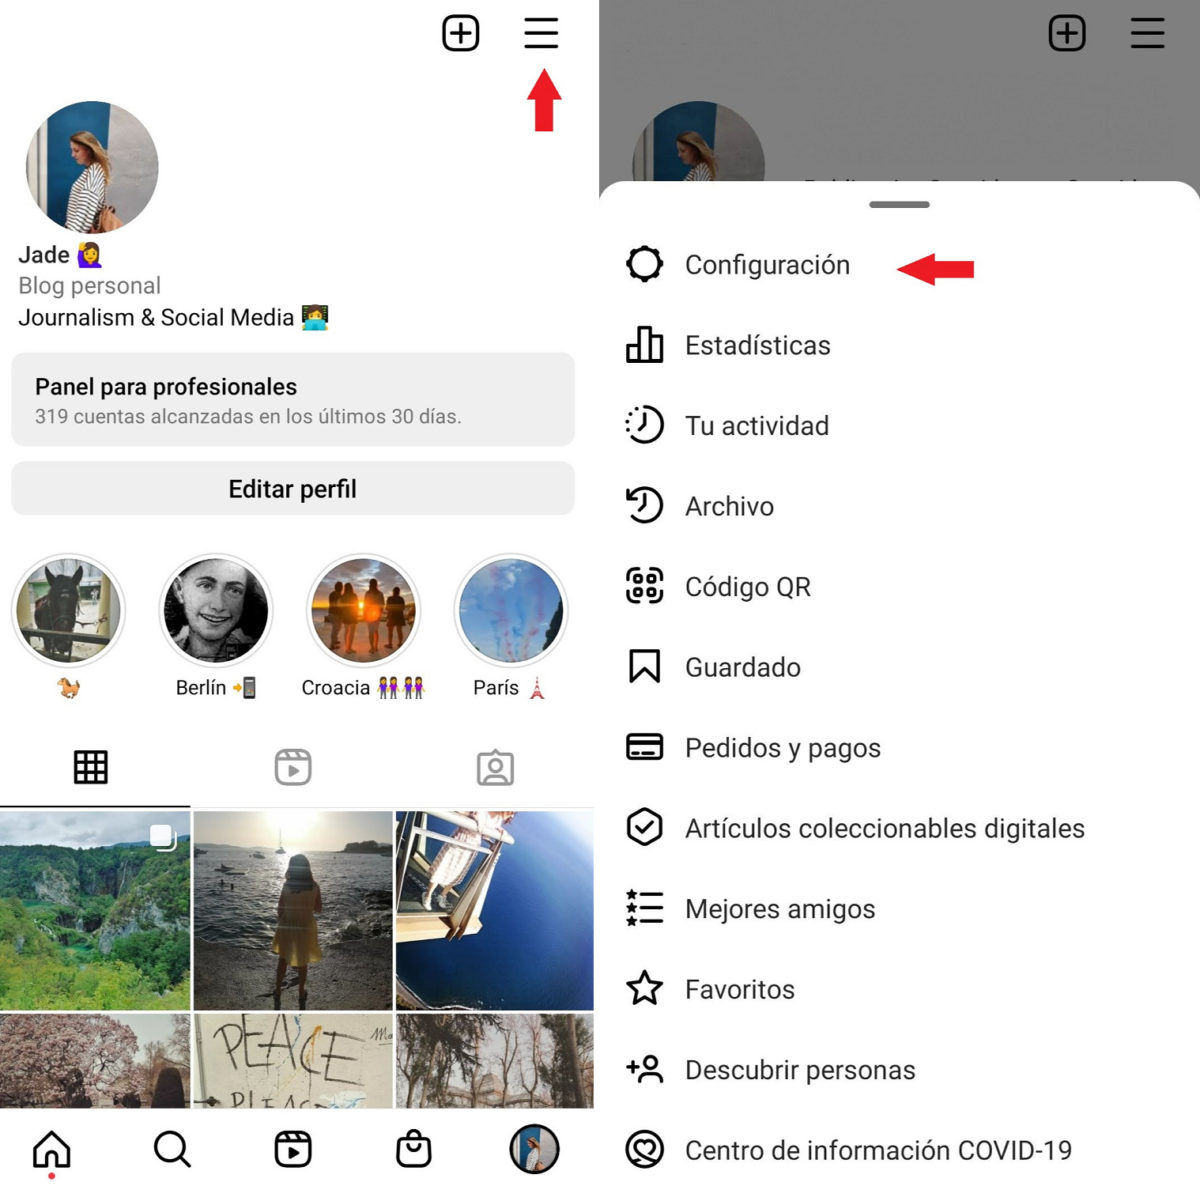 Cómo vincular dos cuentas de Instagram ya creadas